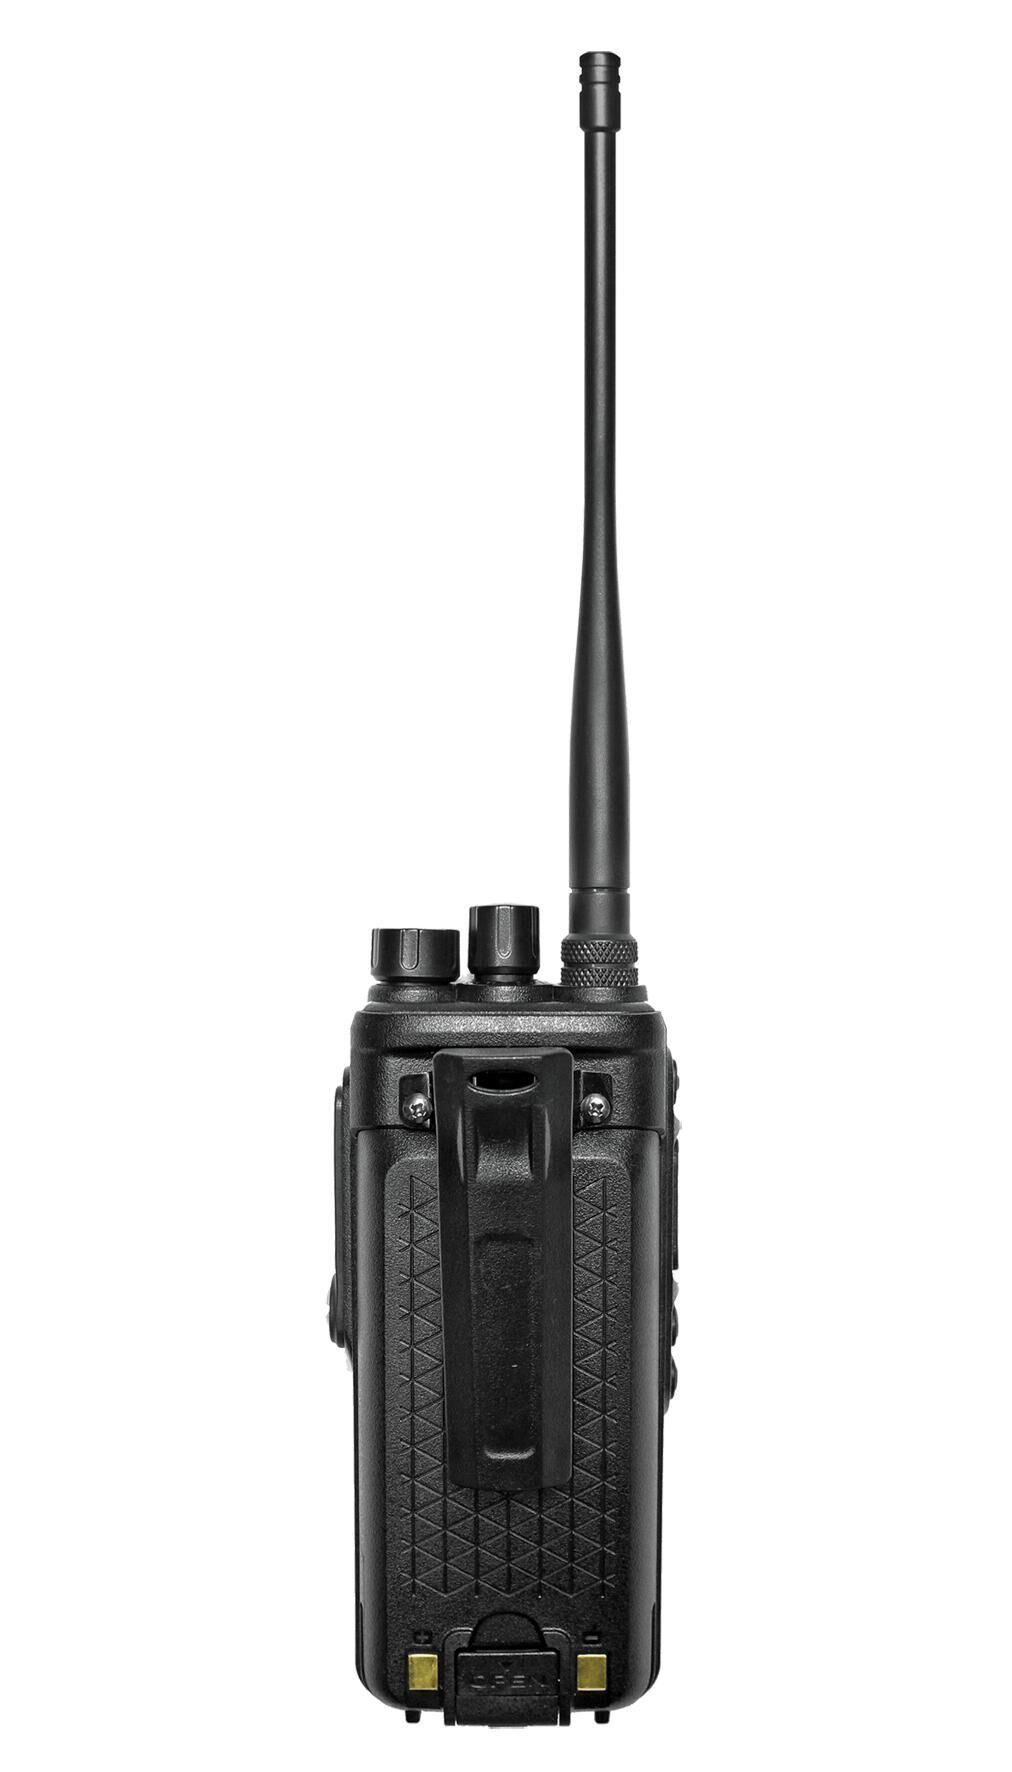  10watts walkie talkie  4